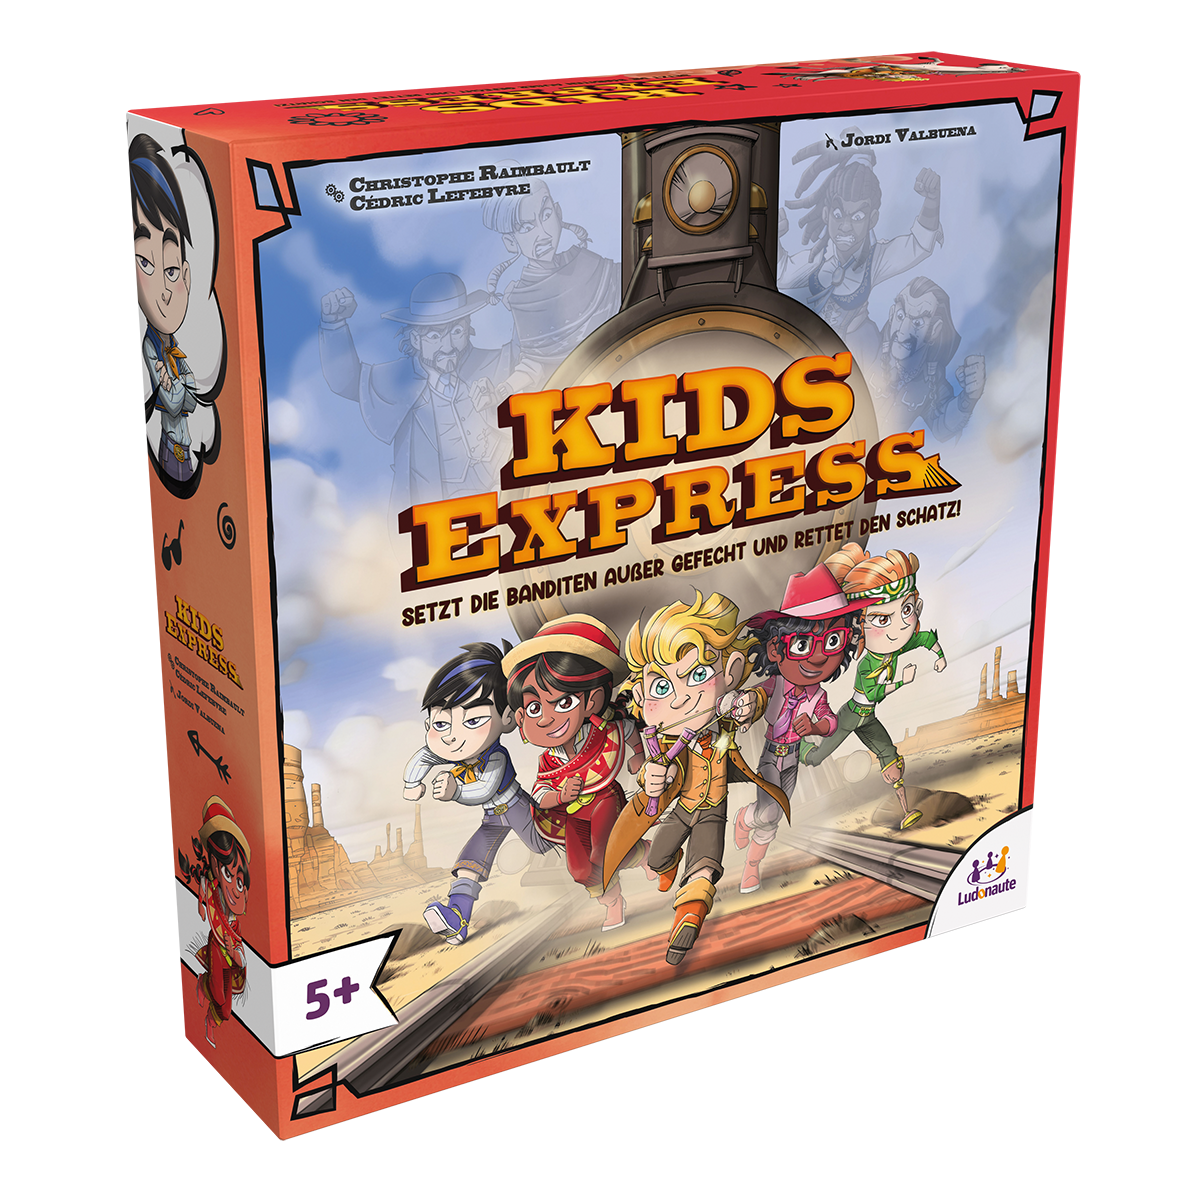  Abenteuerliche Rettungsmission im Kinderkooperationsspiel "Kids Express"!